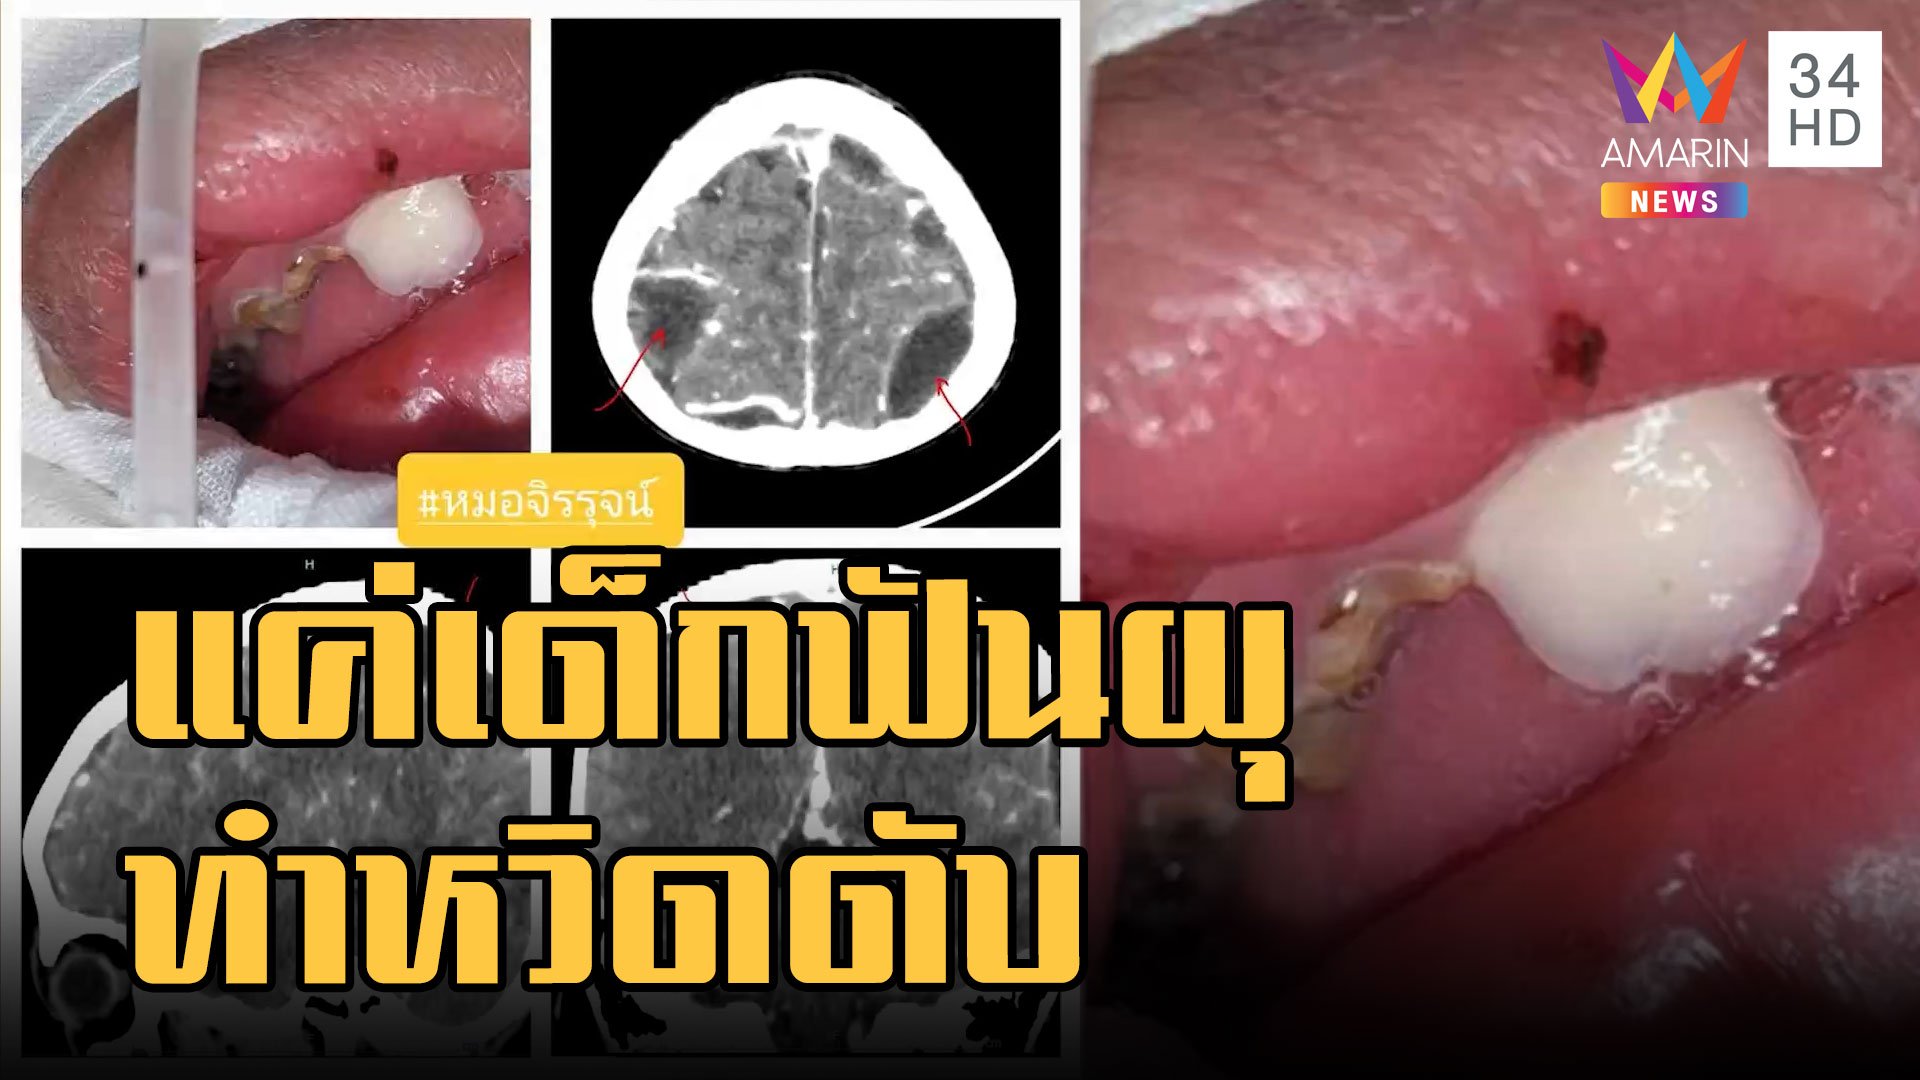 หนูน้อยฟันผุ หนองขึ้นสมองหามส่ง ICU หวิดดับ | ข่าวเที่ยงอมรินทร์ | 21 ม.ค. 66 | AMARIN TVHD34